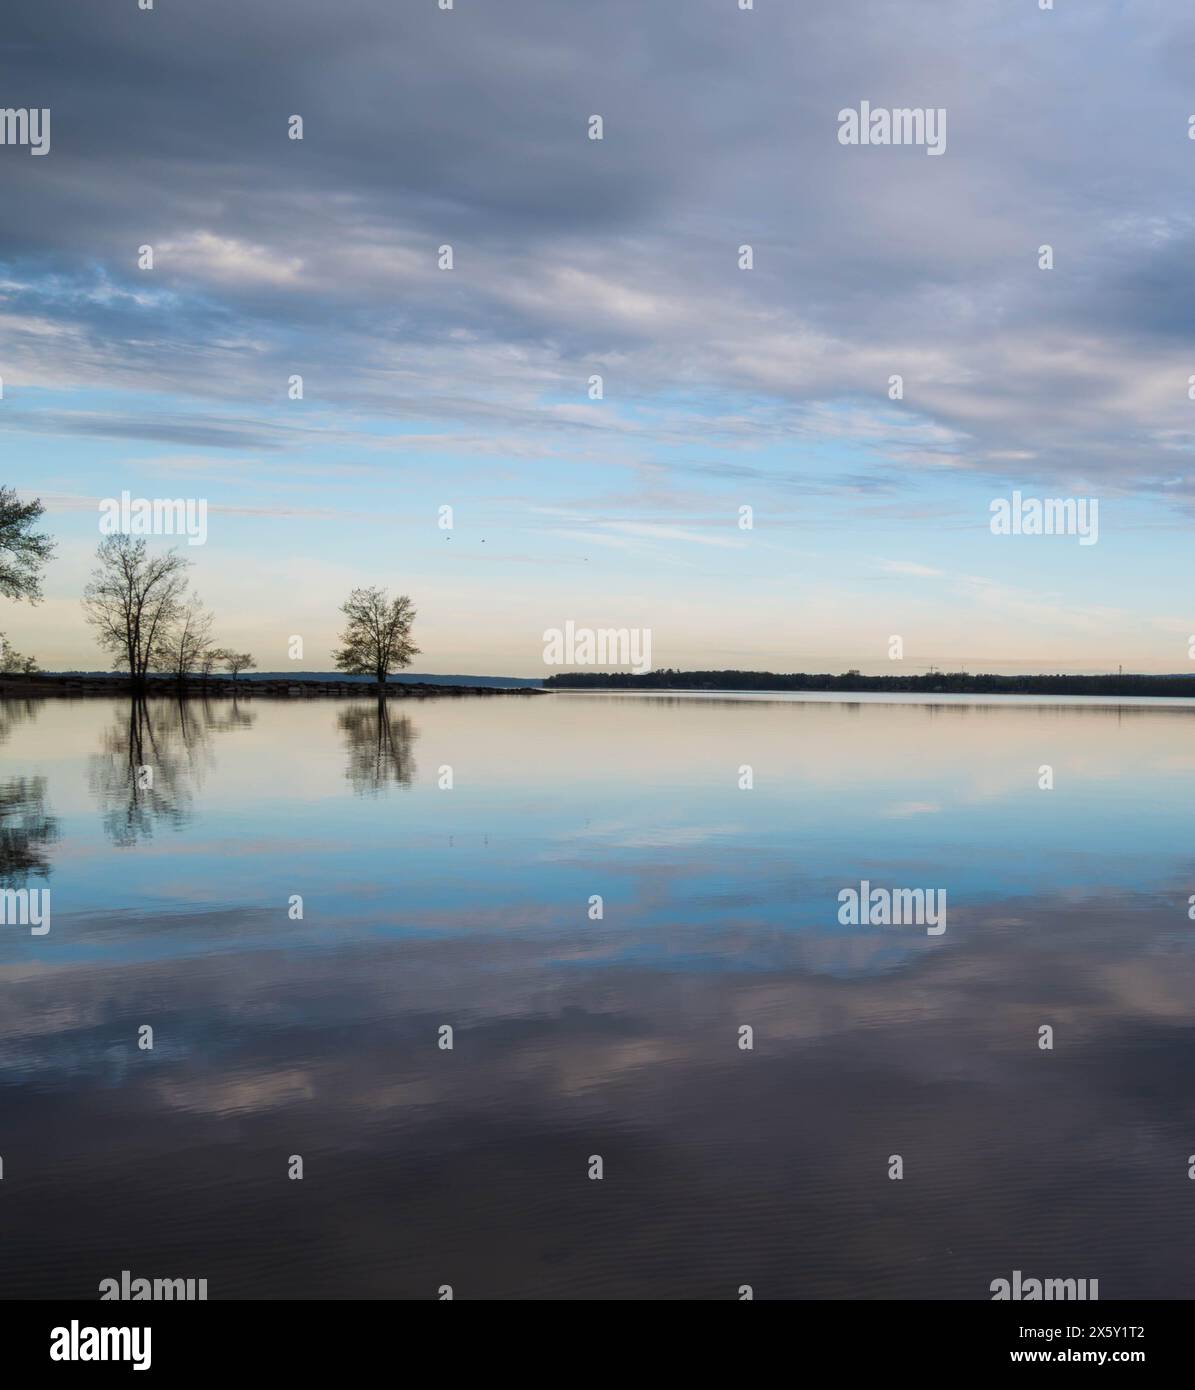 Reflets miroirs à l'aube : arbres tranquilles et cieux doux sur des eaux tranquilles Banque D'Images